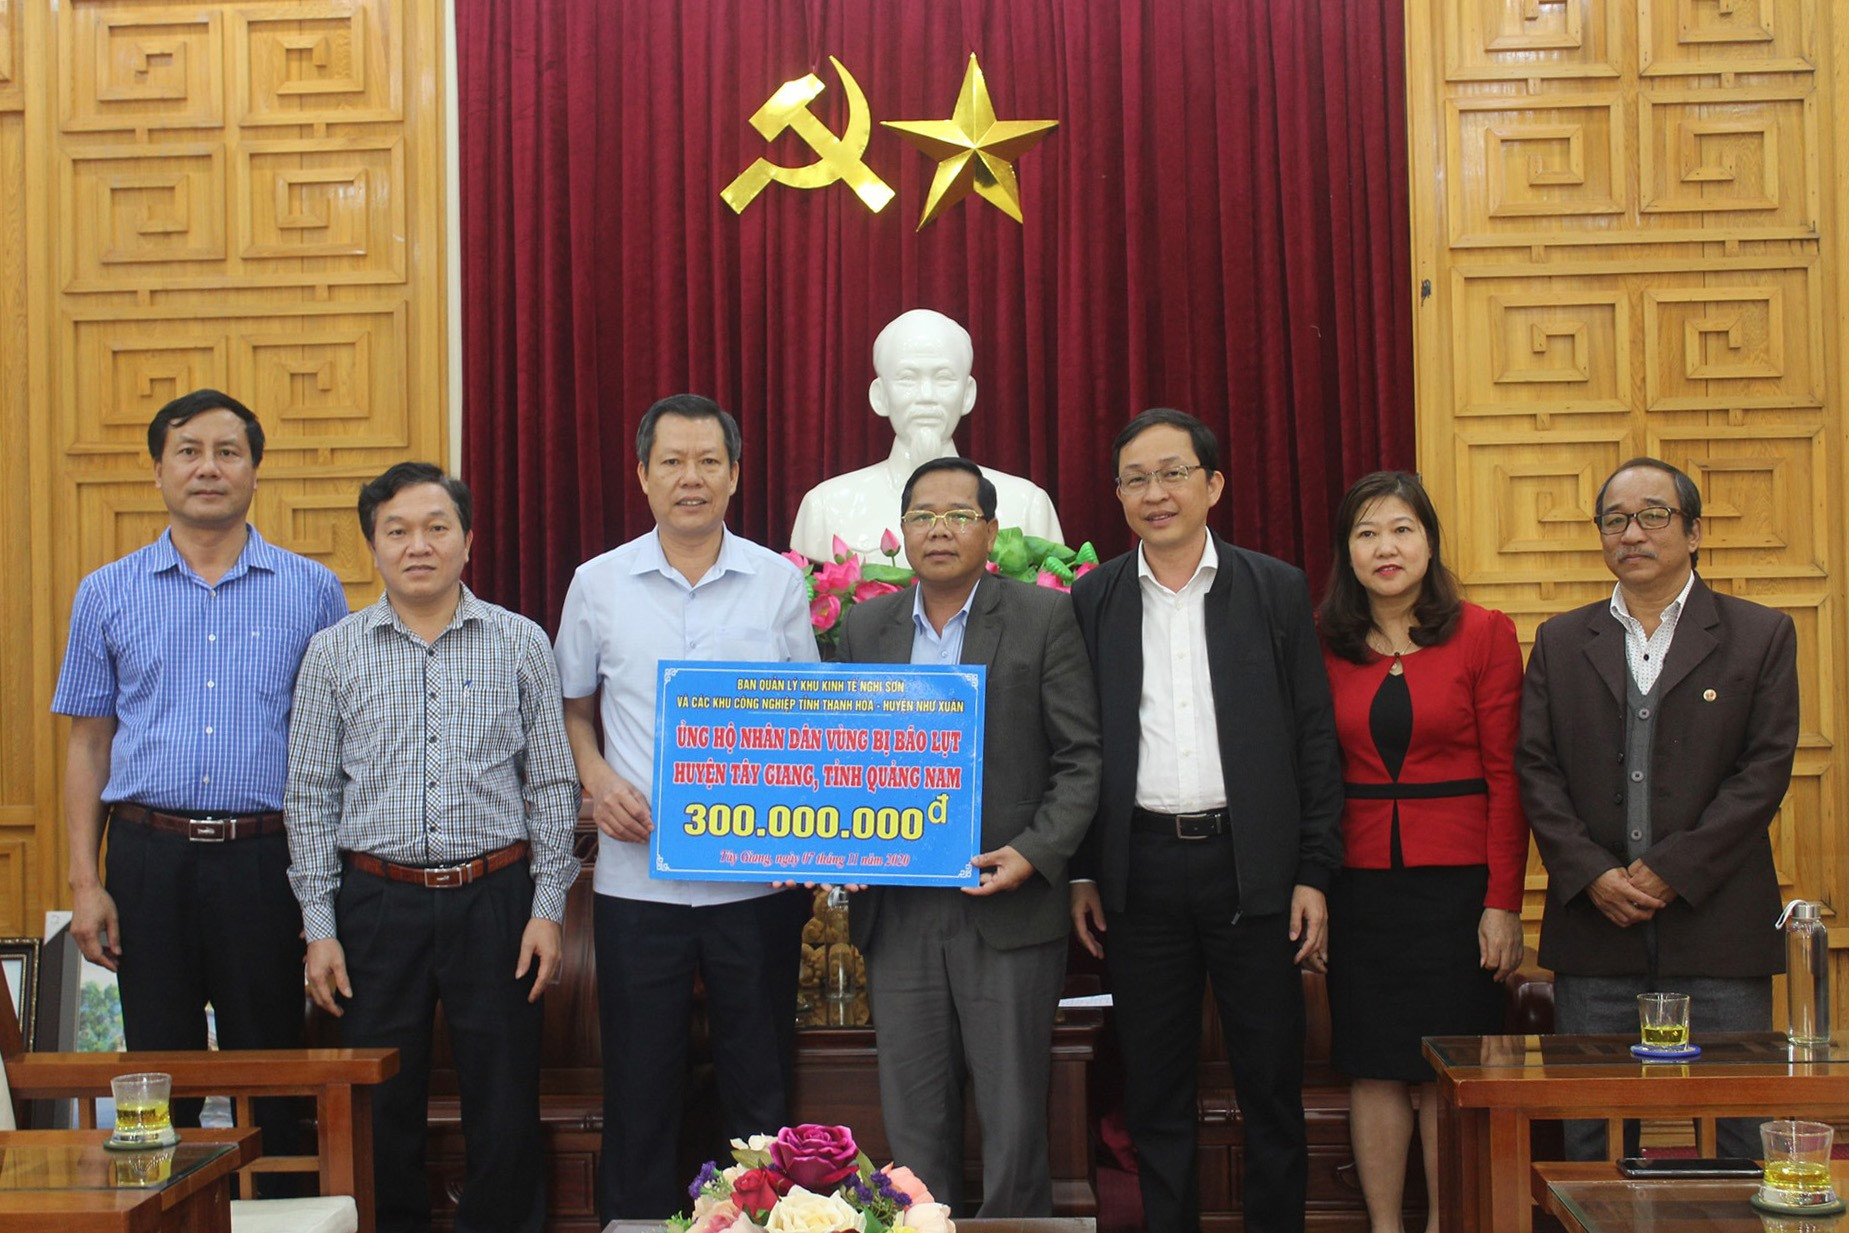 Đoàn công tác của huyện Như Xuân, tỉnh Thanh Hóa trao tặng 300 triệu đồng cho Tây Giang giúp nhân dân sớm khắc phục hậu quả thiên tai. Ảnh: ĐÌNH HIỆP.